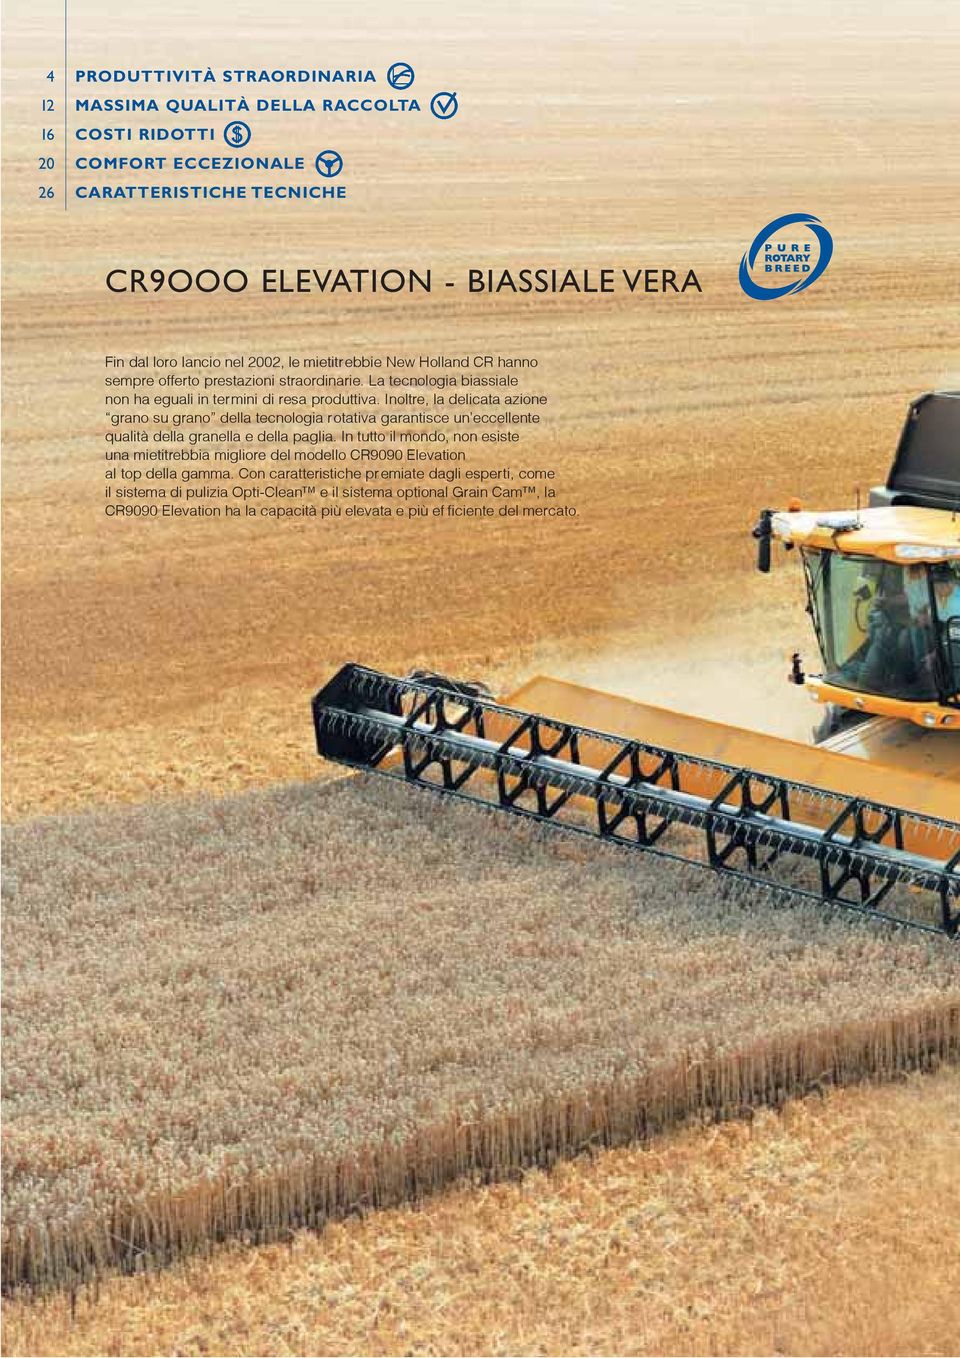 Inoltre, la delicata azione grano su grano della tecnologia rotativa garantisce un eccellente qualità della granella e della paglia.